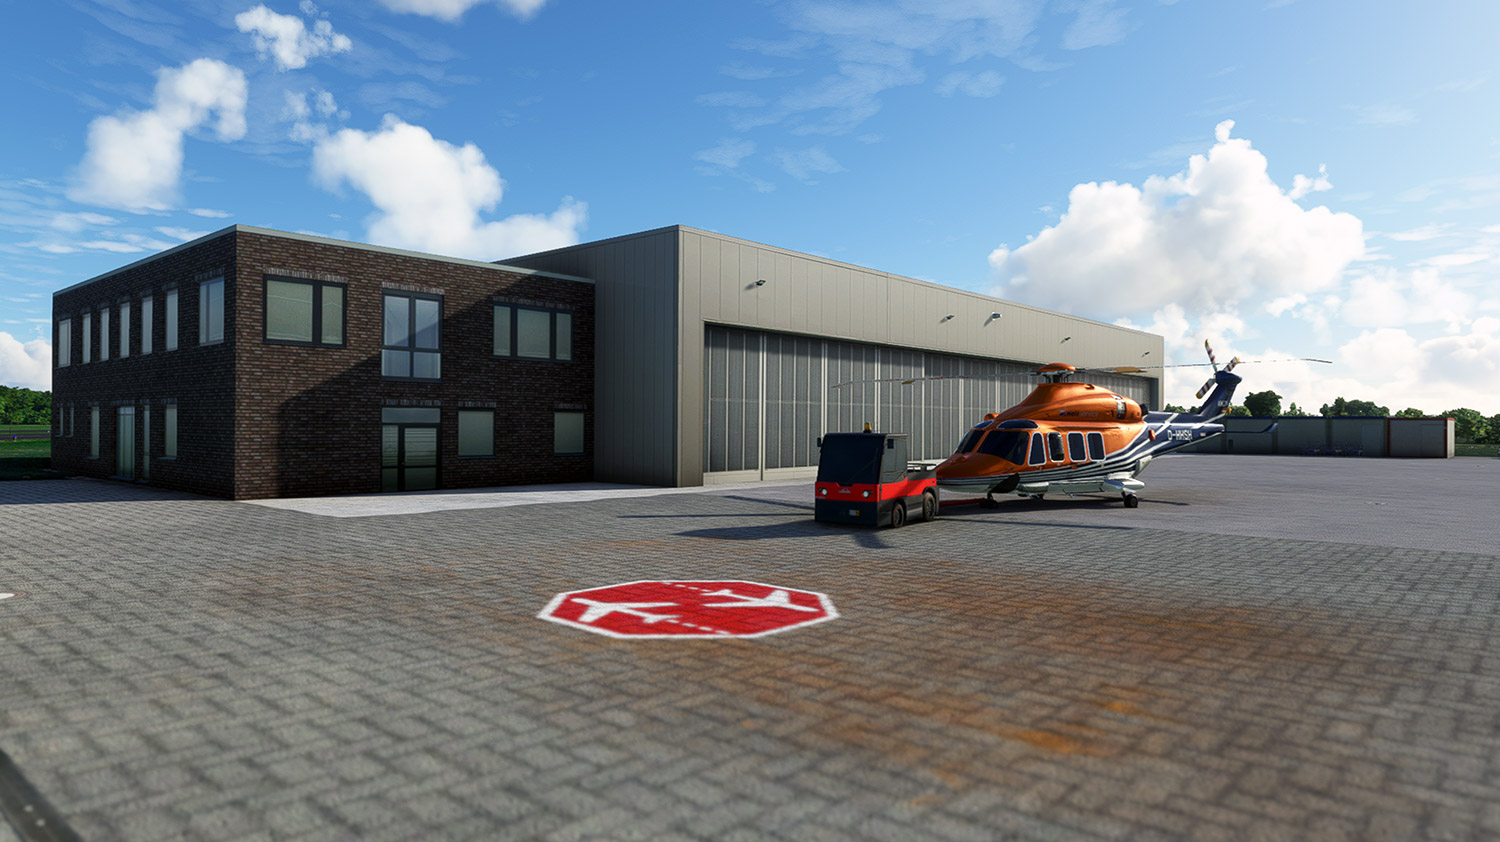 Aviation-Sim-Design - Airfield Emden